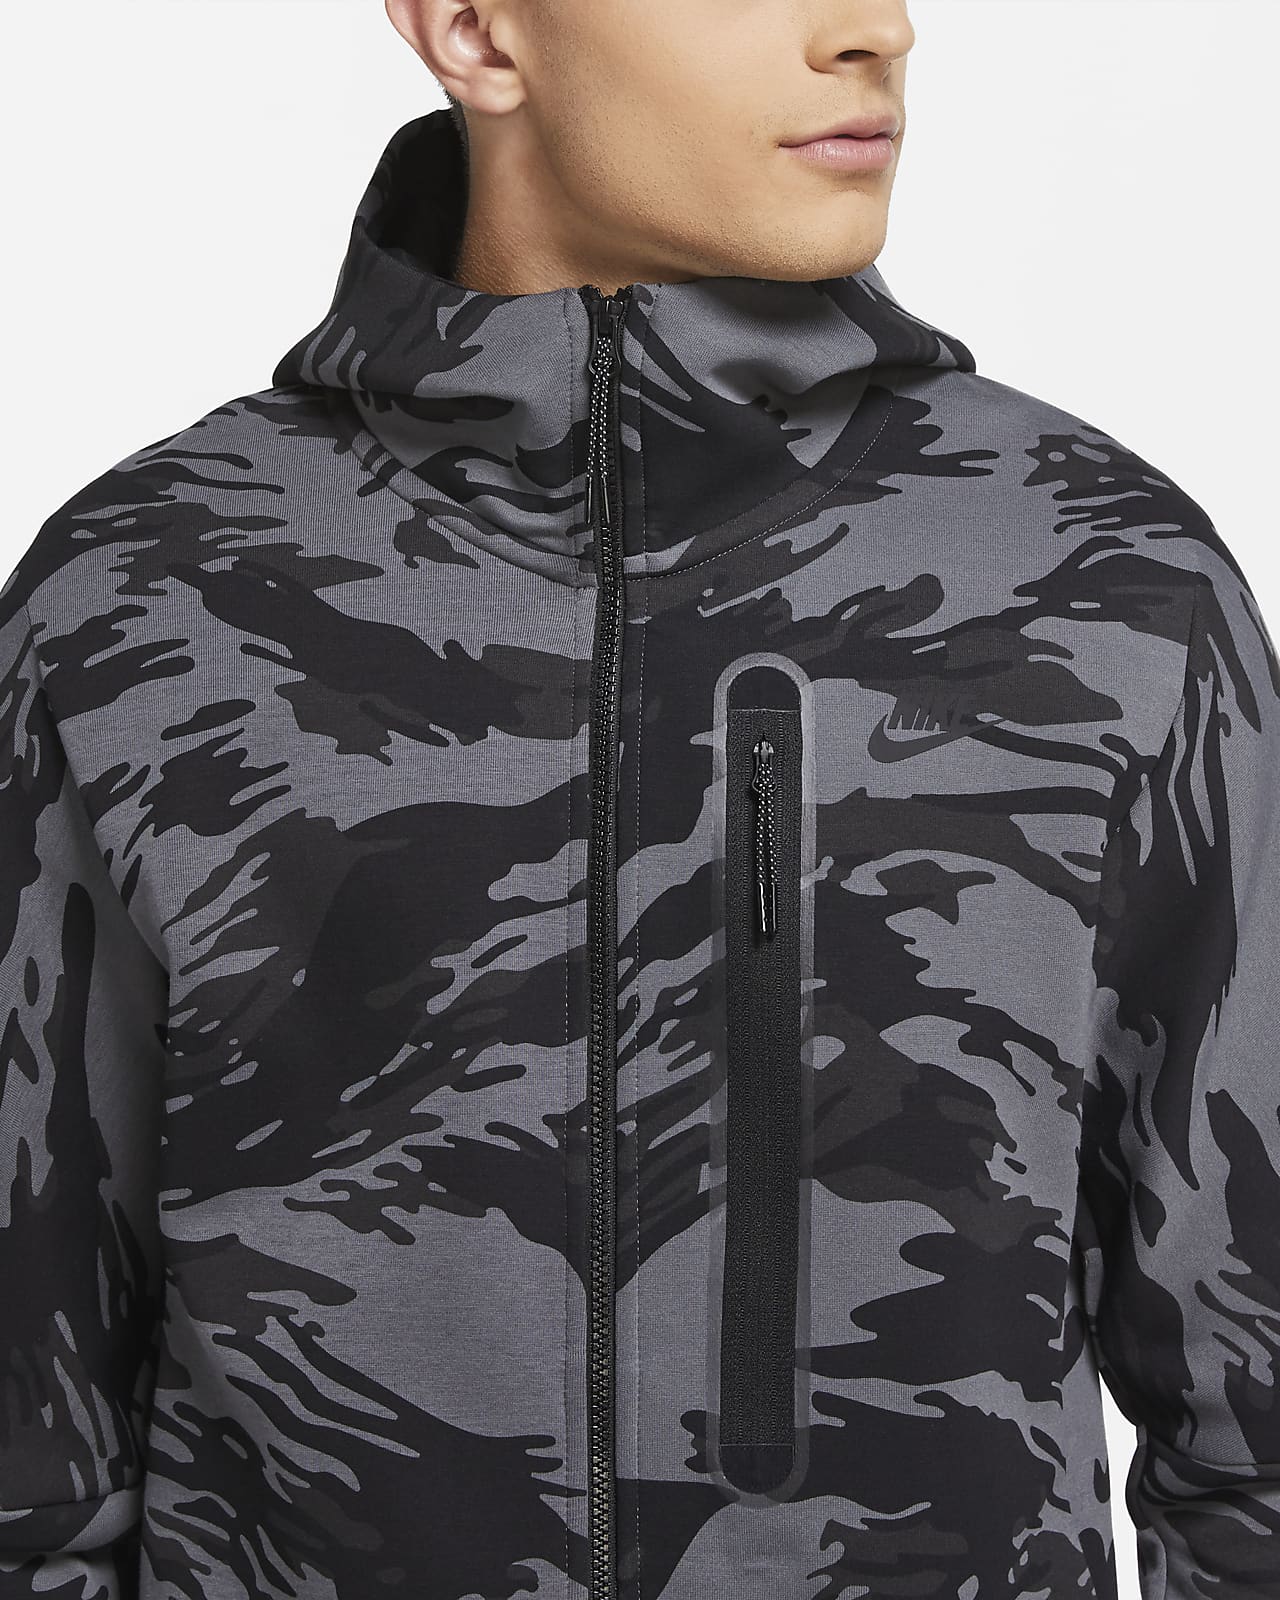 nike tech fleece jacket black and grey